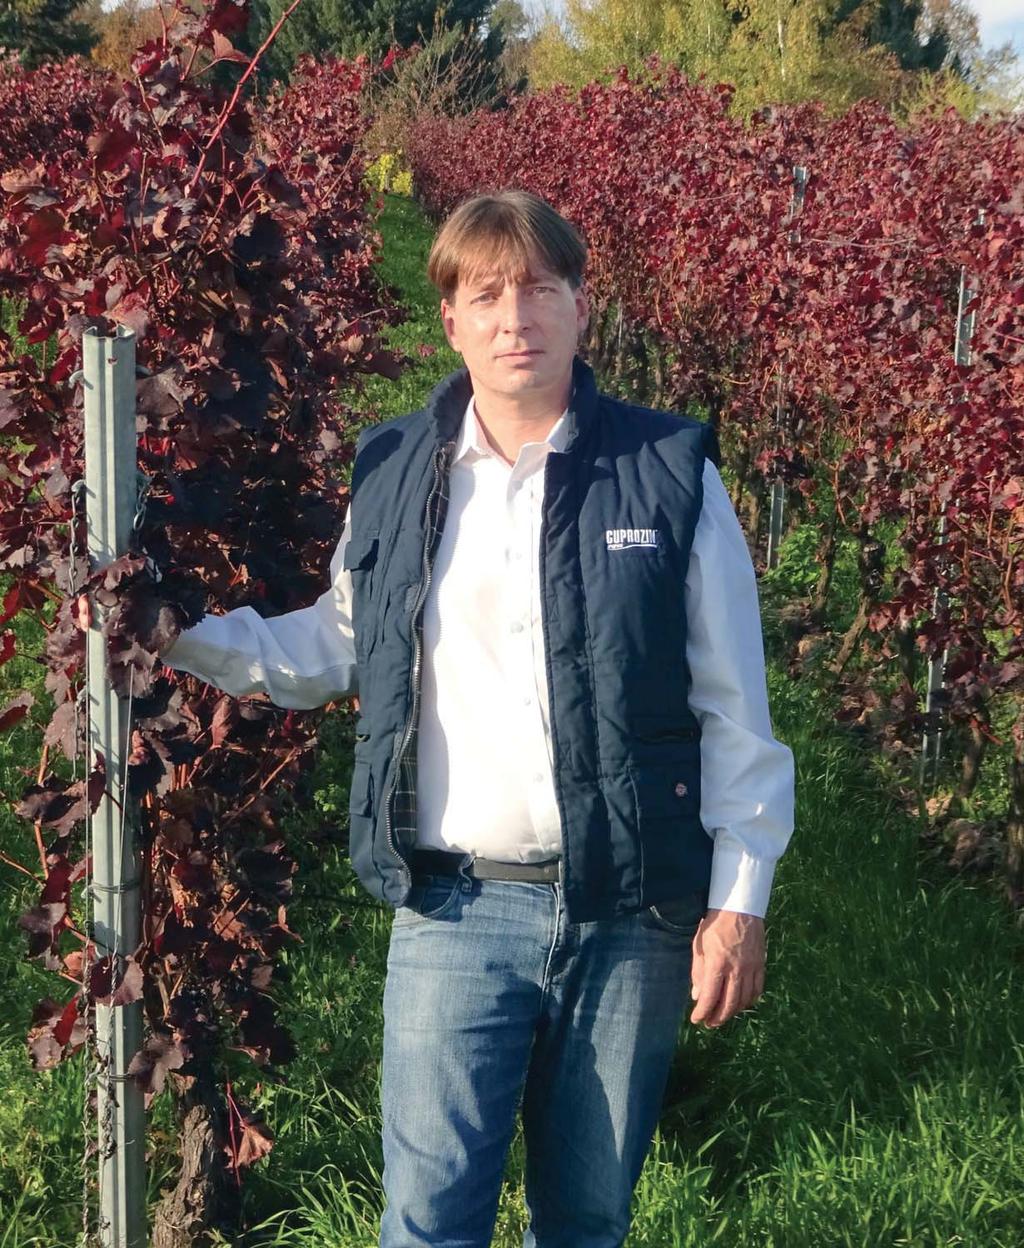 Weinbau 2018 Michael Daniel Fachberatung Weinbau Für Fragen sprechen Sie mich gerne an! Tel.